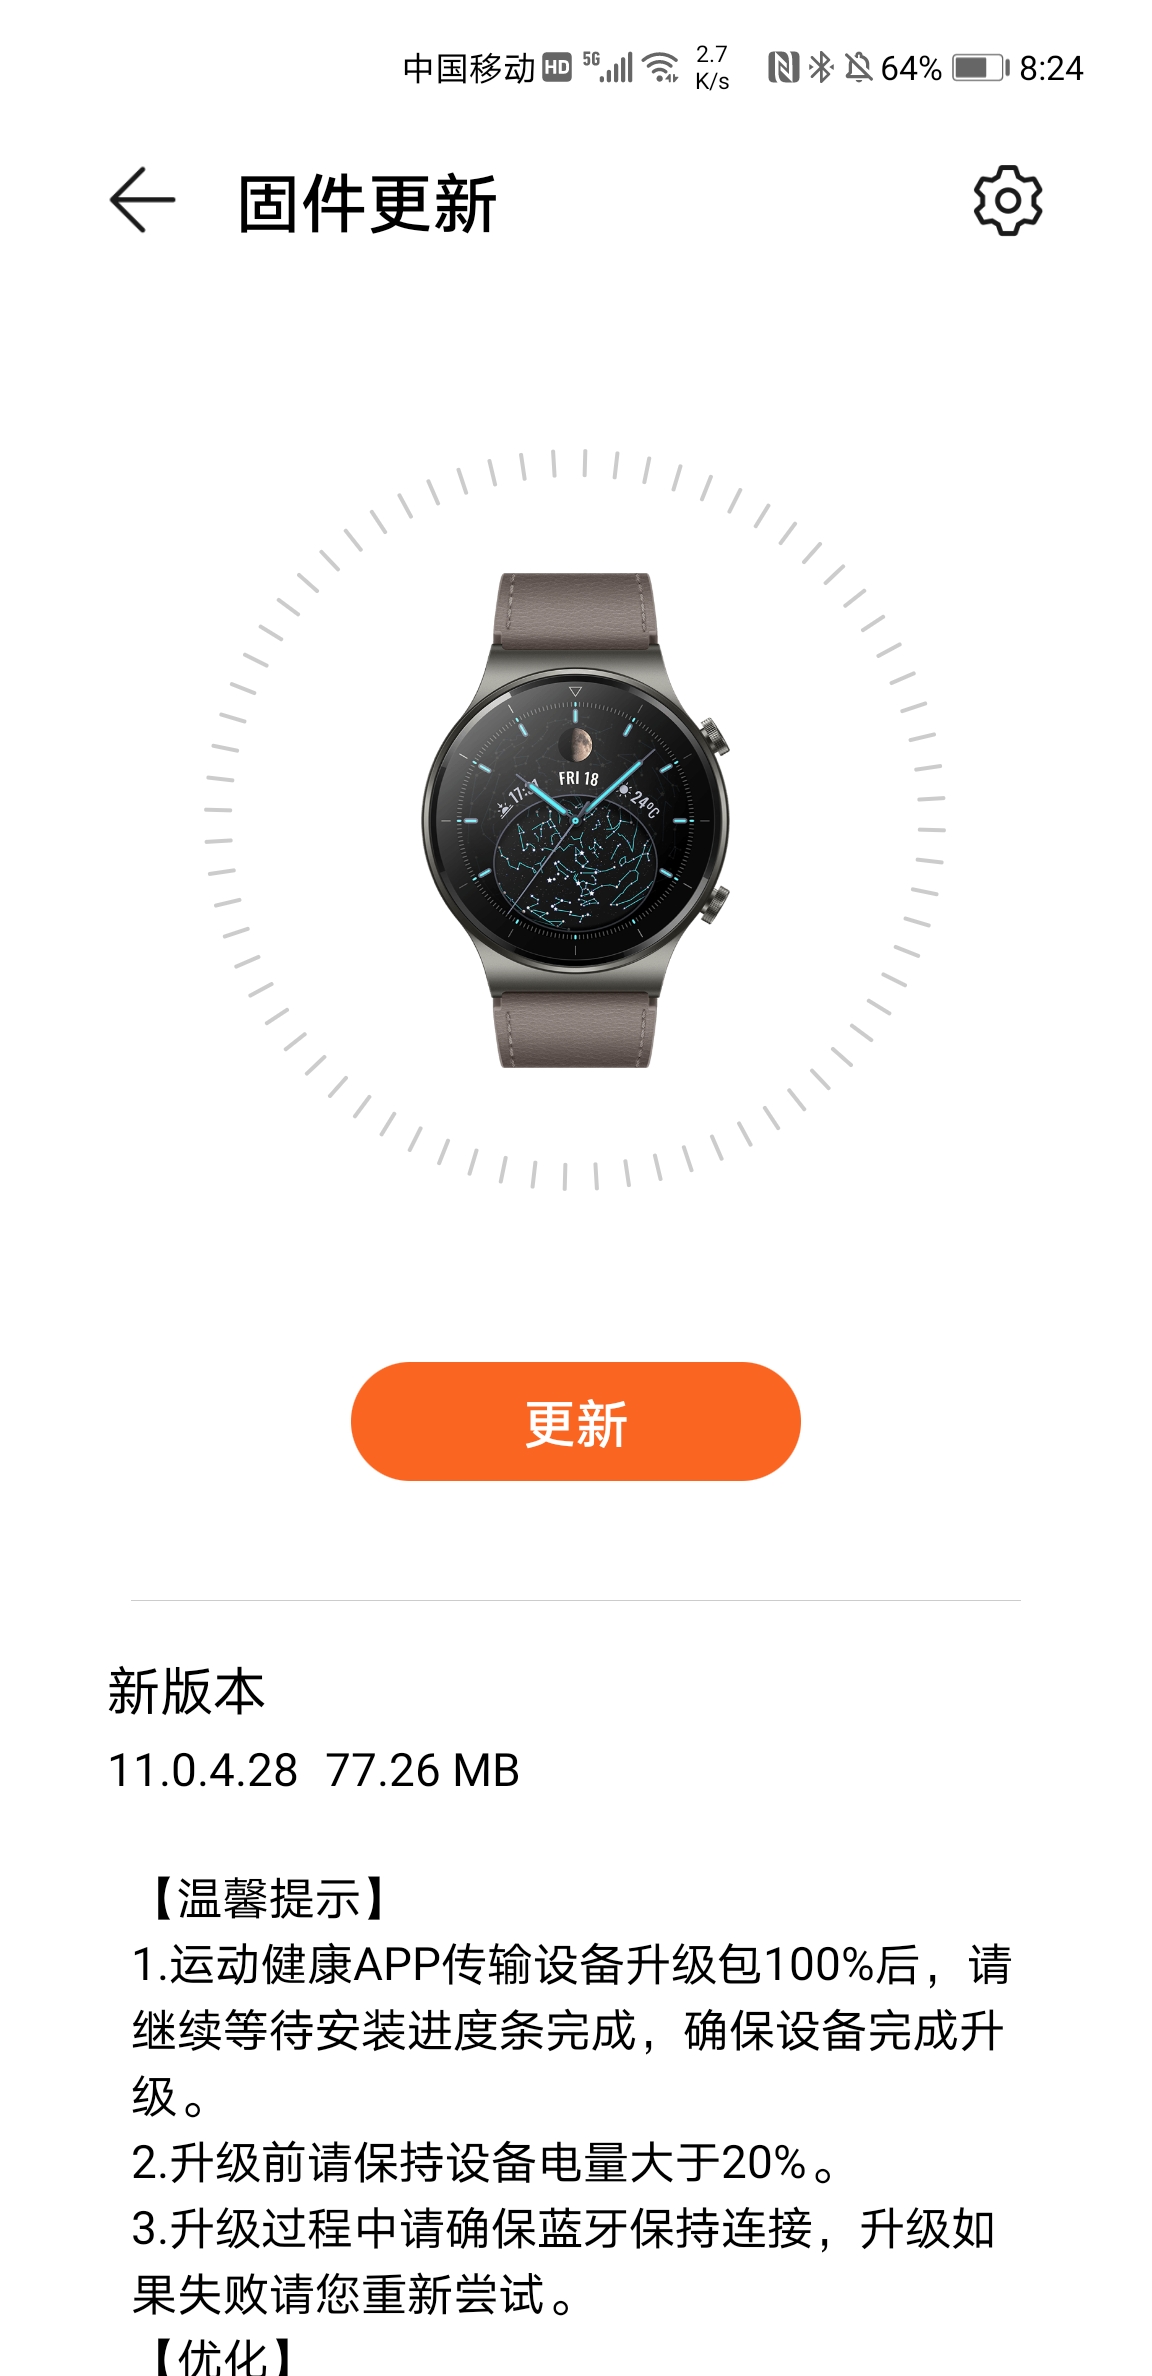 Huawei Watch GT 2 Pro February 2021 update